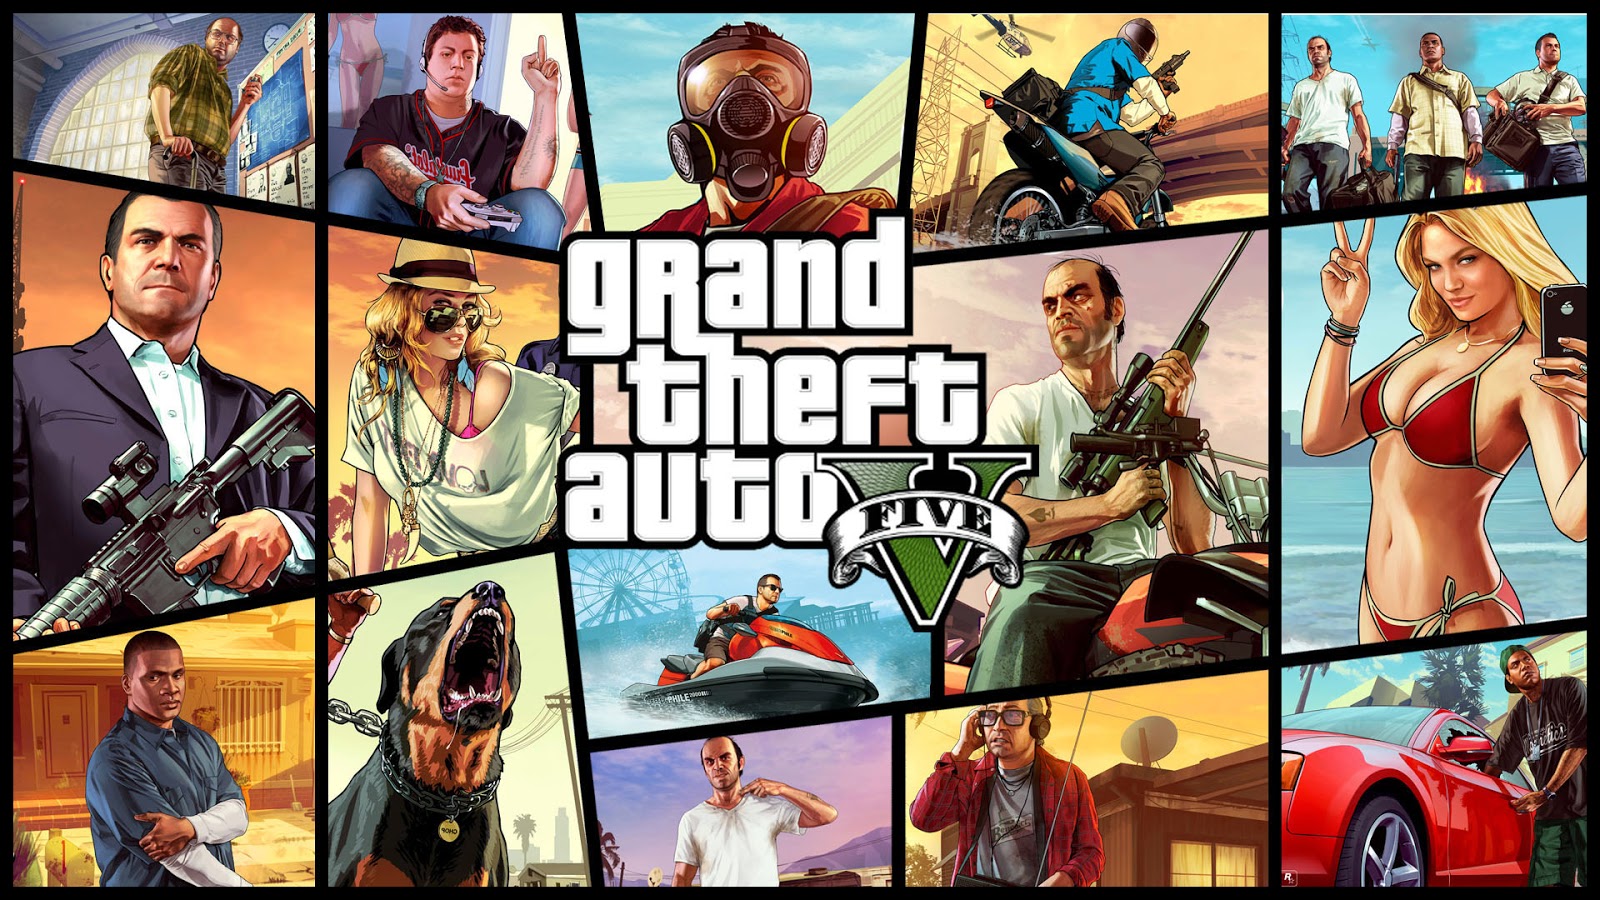 طريقة download لعبة جراند ثفت أوتو 5 للاندرويد مع فيديو توضيحي لتشغيل لعبة Grand Theft Auto v 5 بسرعة فائقة